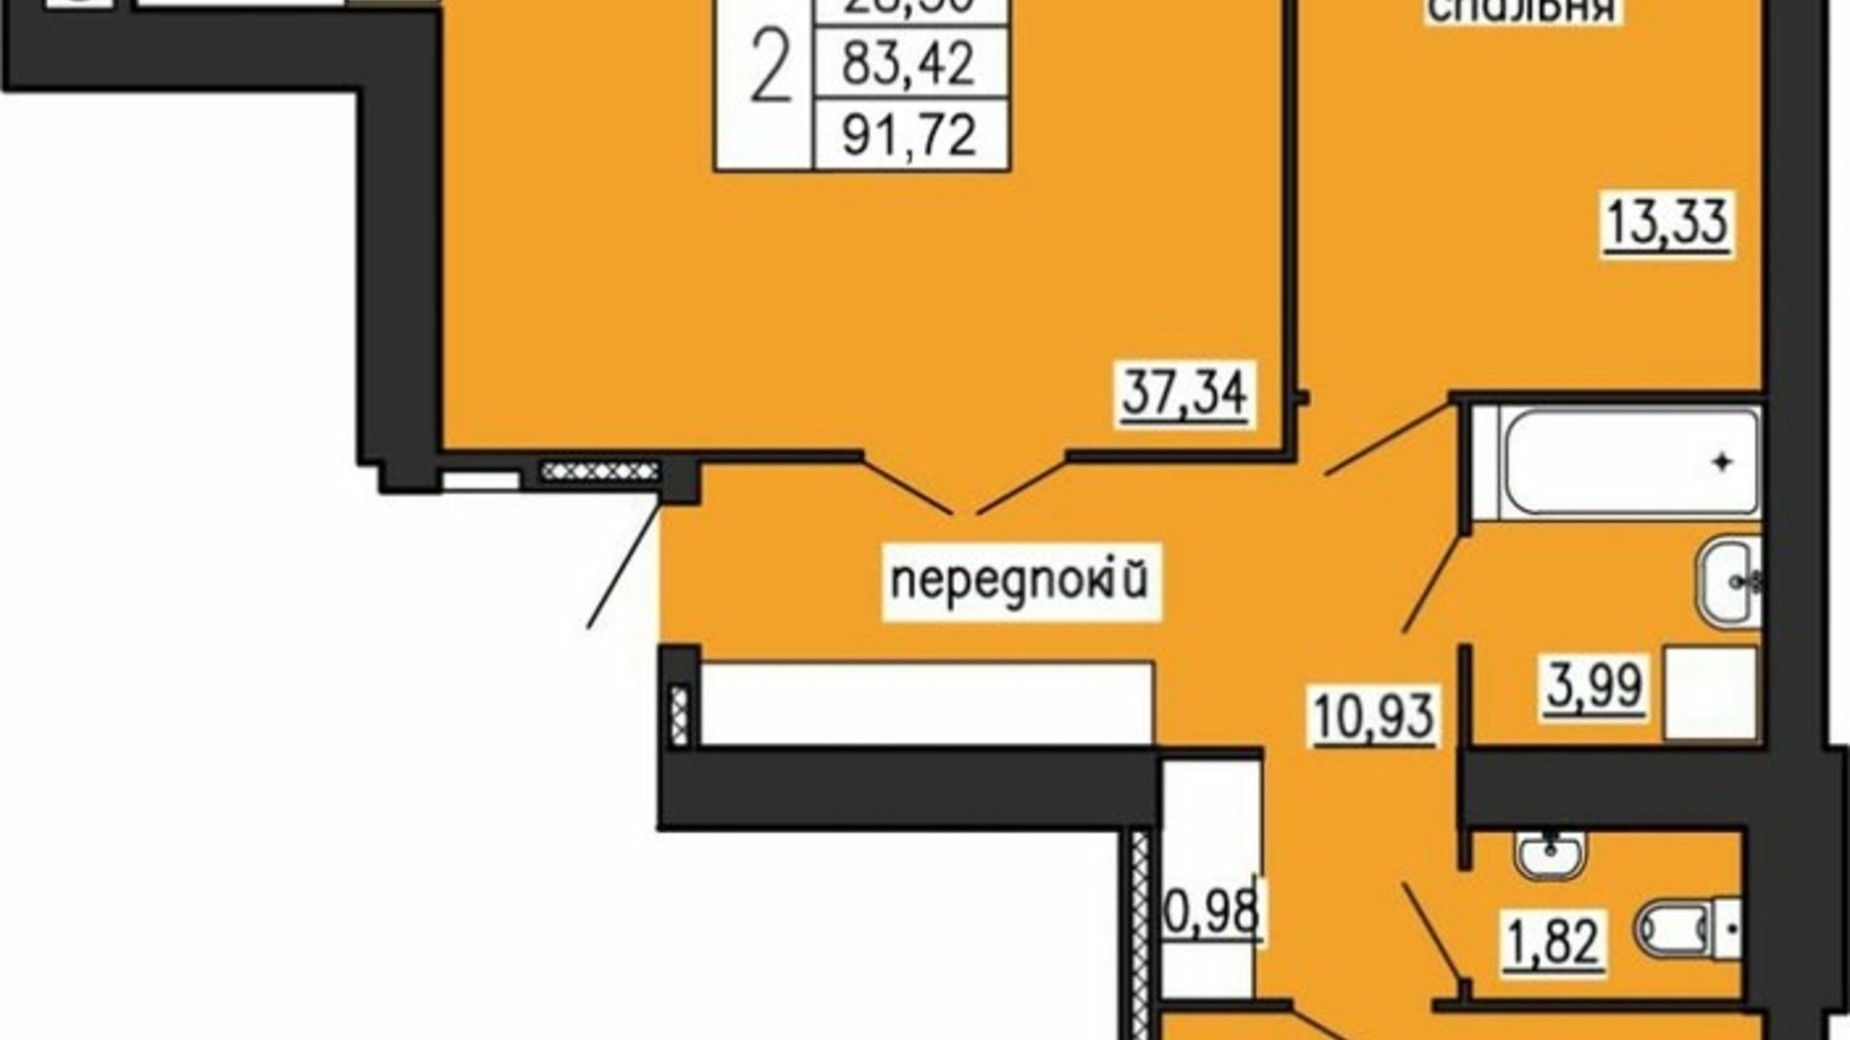 Планування 2-кімнатної квартири в ЖК по вул. Лучаківського-Тролейбусна 91.72 м², фото 615626